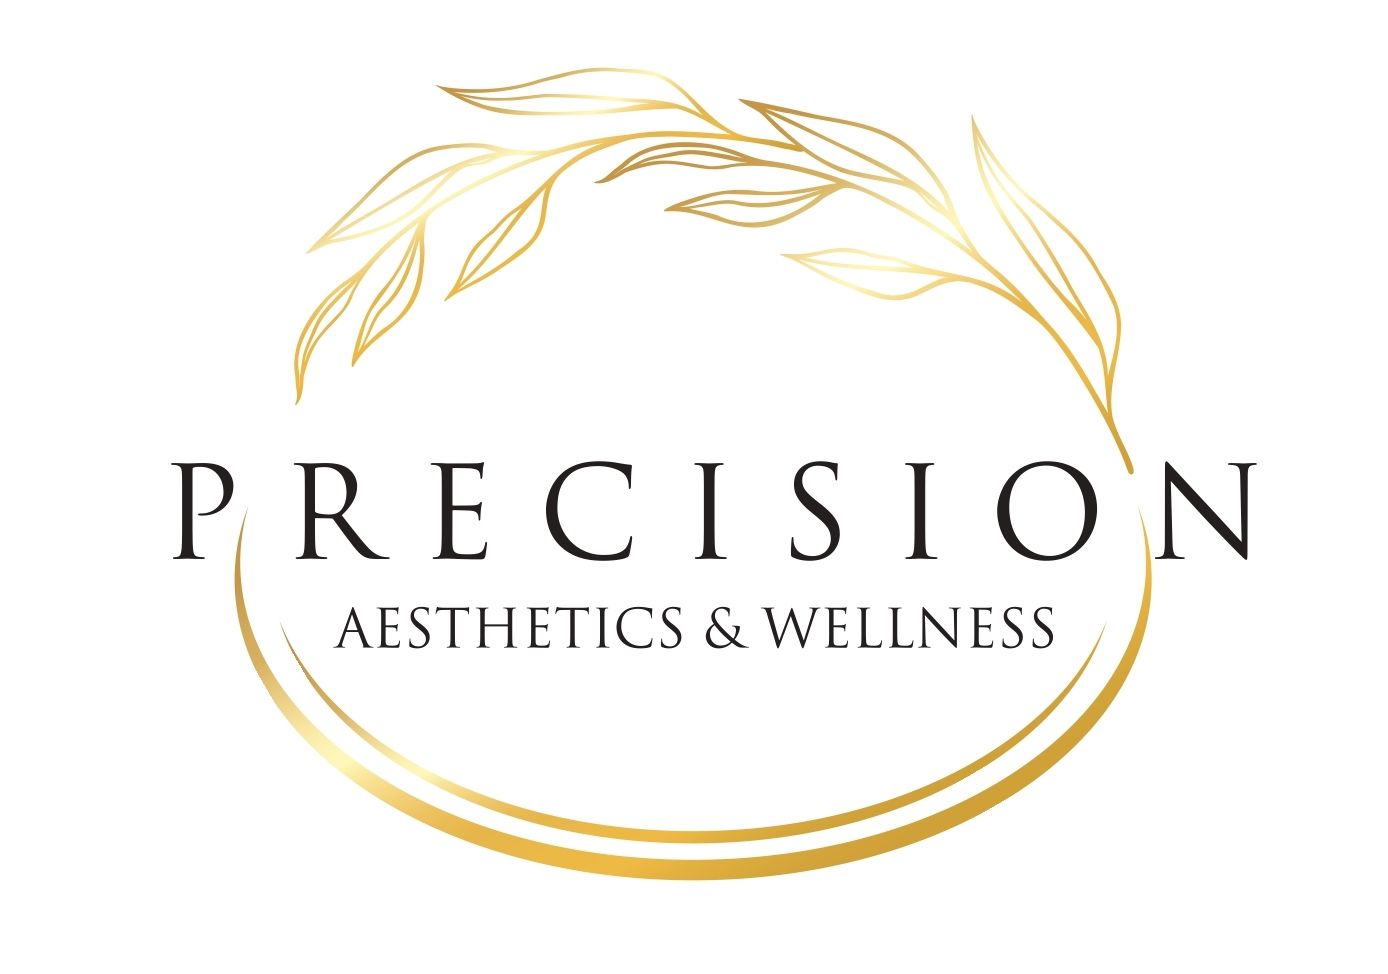 Precision Aesthetics & Wellness Official Business Logo